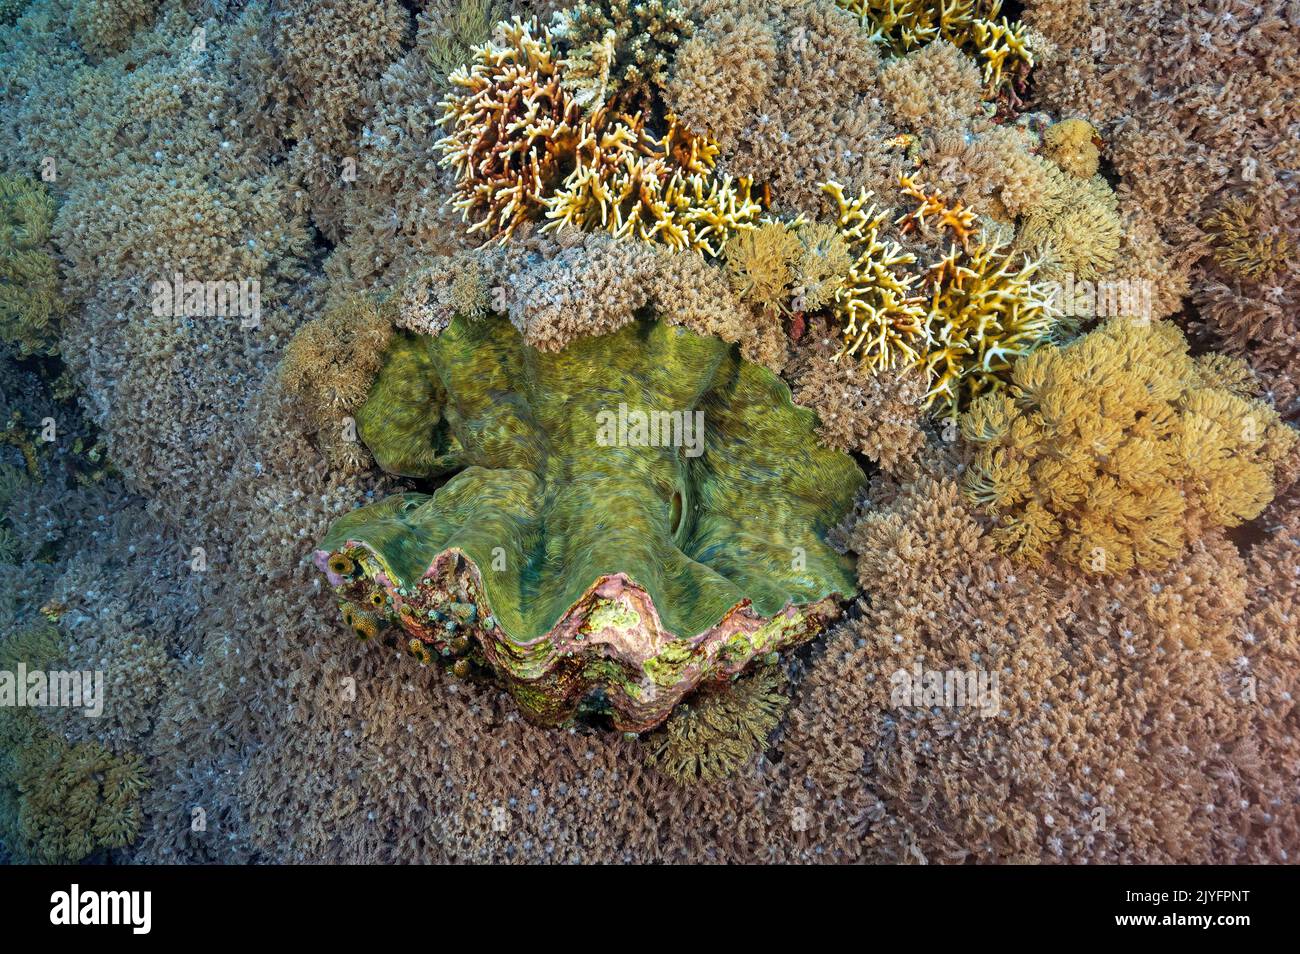 Palourdes géantes, Tridacna gigas, entourées de coraux mous, Clavularia viridis, Raja Ampat Indonésie. Banque D'Images